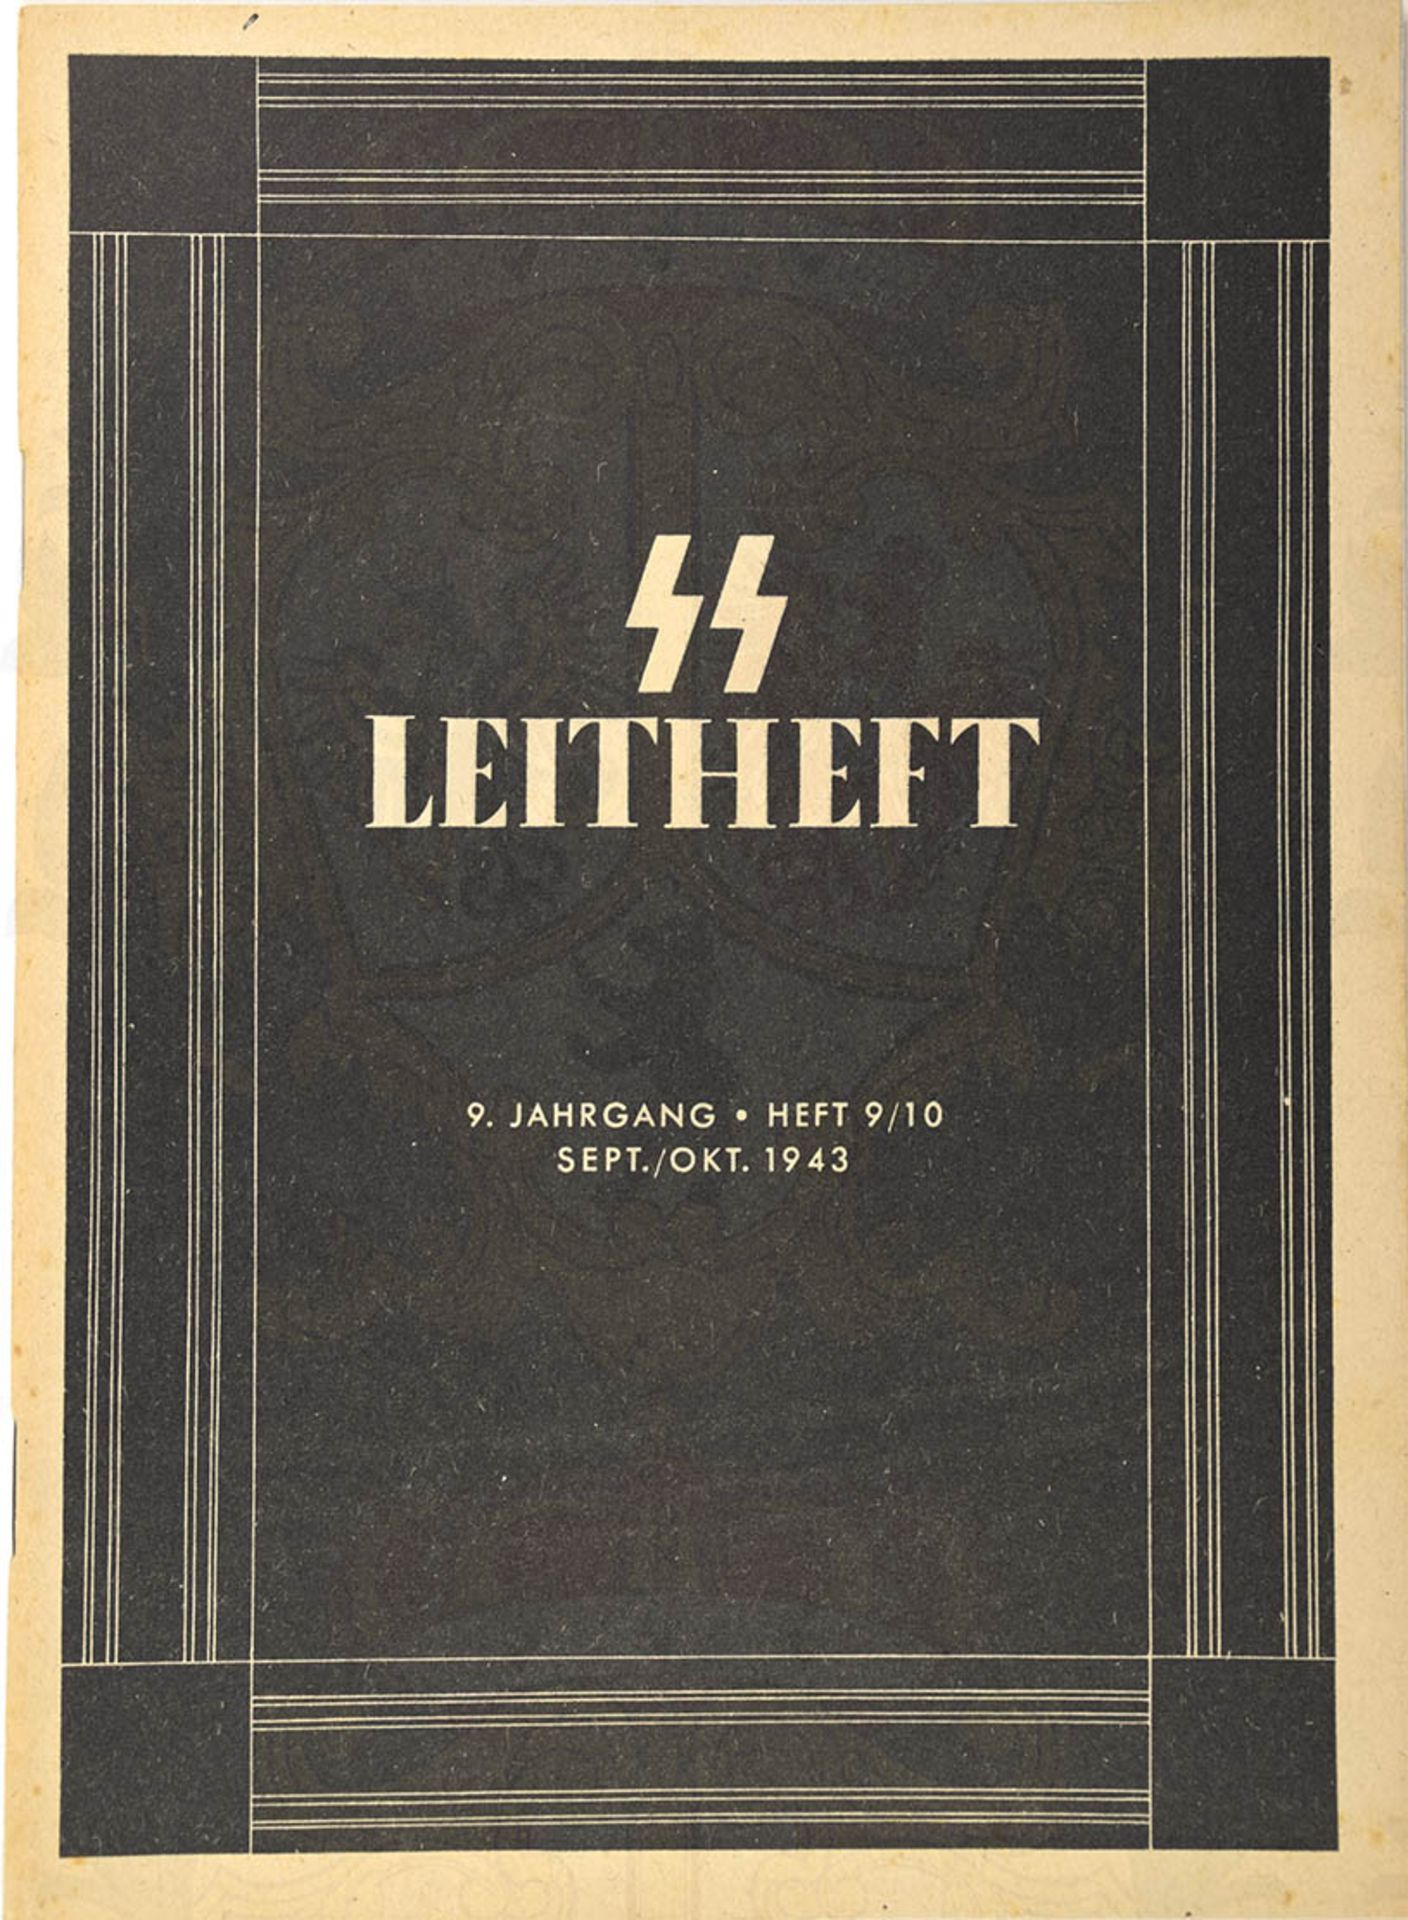 SS-LEITHEFT, 3. Jahrgang 1937-Nr. 5, Abb., 86 Textseiten, Beiträge u. a. "Hier lacht der SS-Mann",